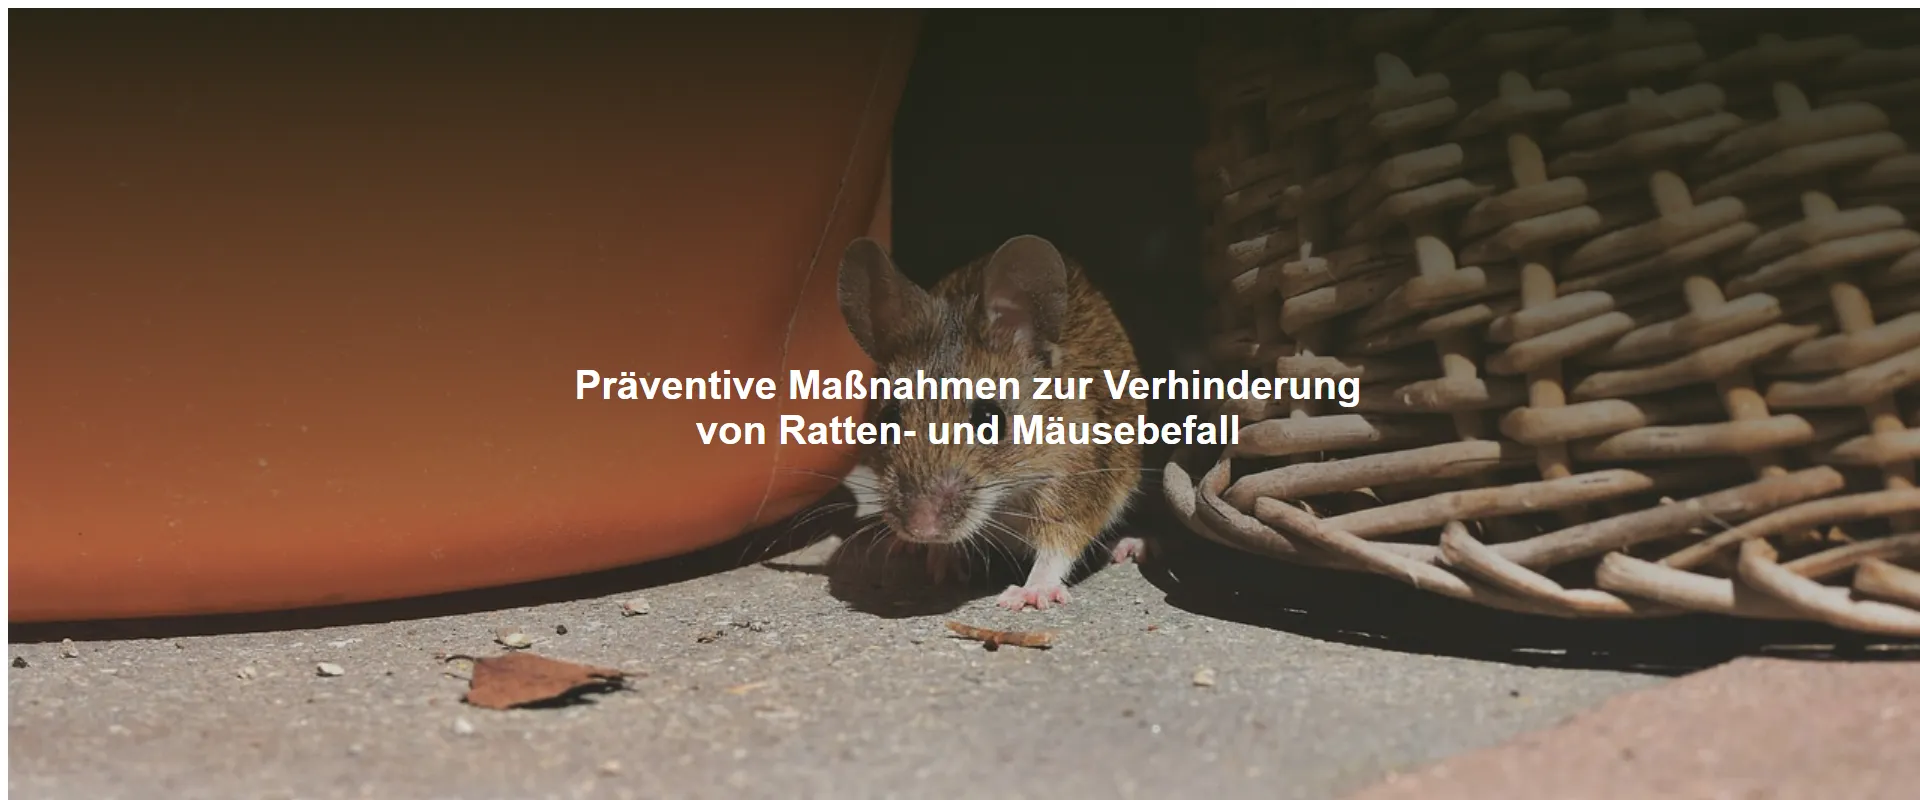 Präventive Maßnahmen zur Verhinderung von Ratten- und Mäusebefall